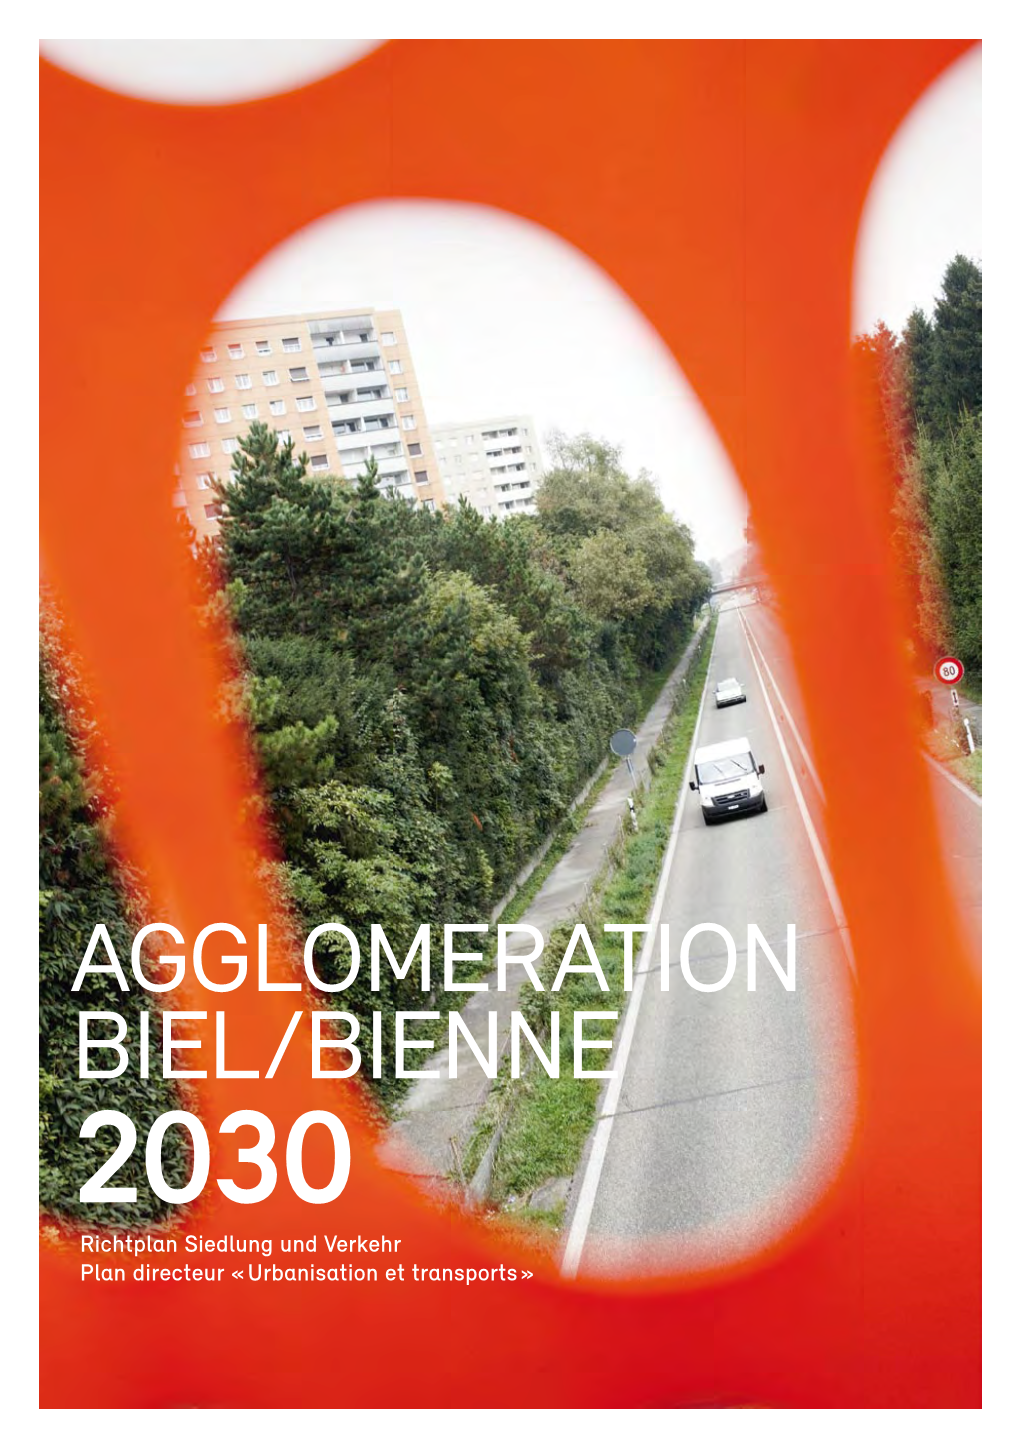 AGGLOMERATION BIEL/BIENNE 2030 Richtplan Siedlung Und Verkehr Plan Directeur « Urbanisation Et Transports » INHALTSVERZEICHNIS / SOMMAIRE